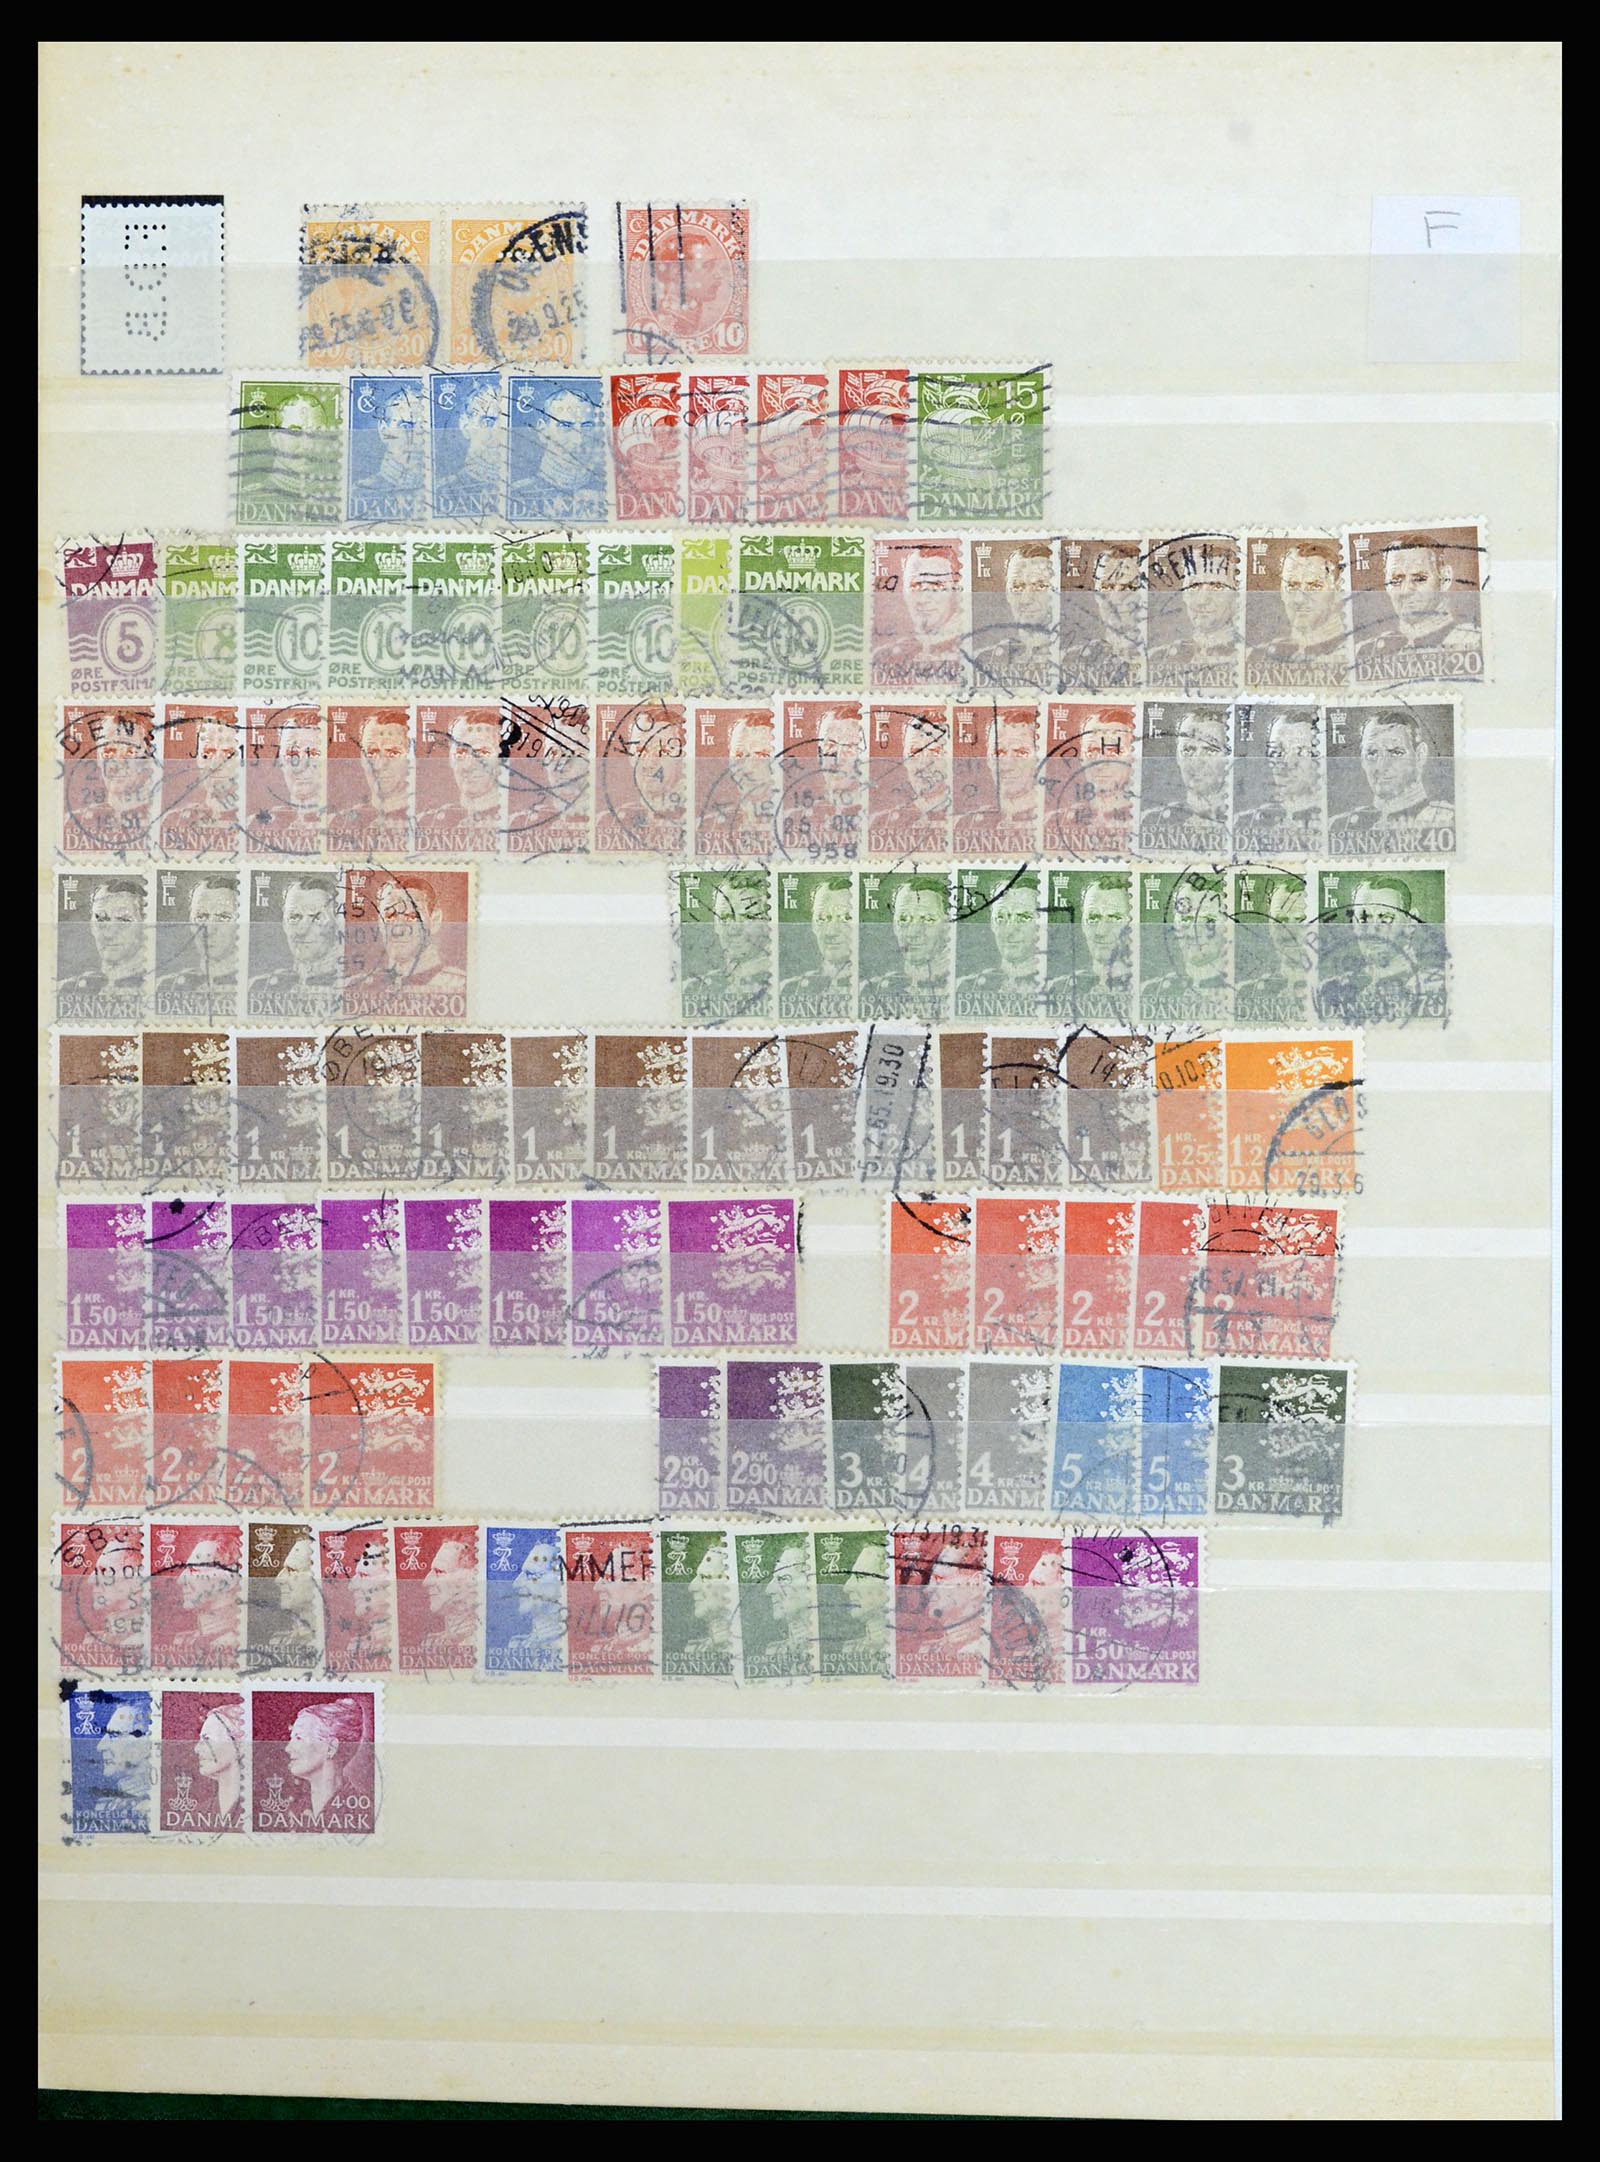 37056 072 - Postzegelverzameling 37056 Denemarken perfins.